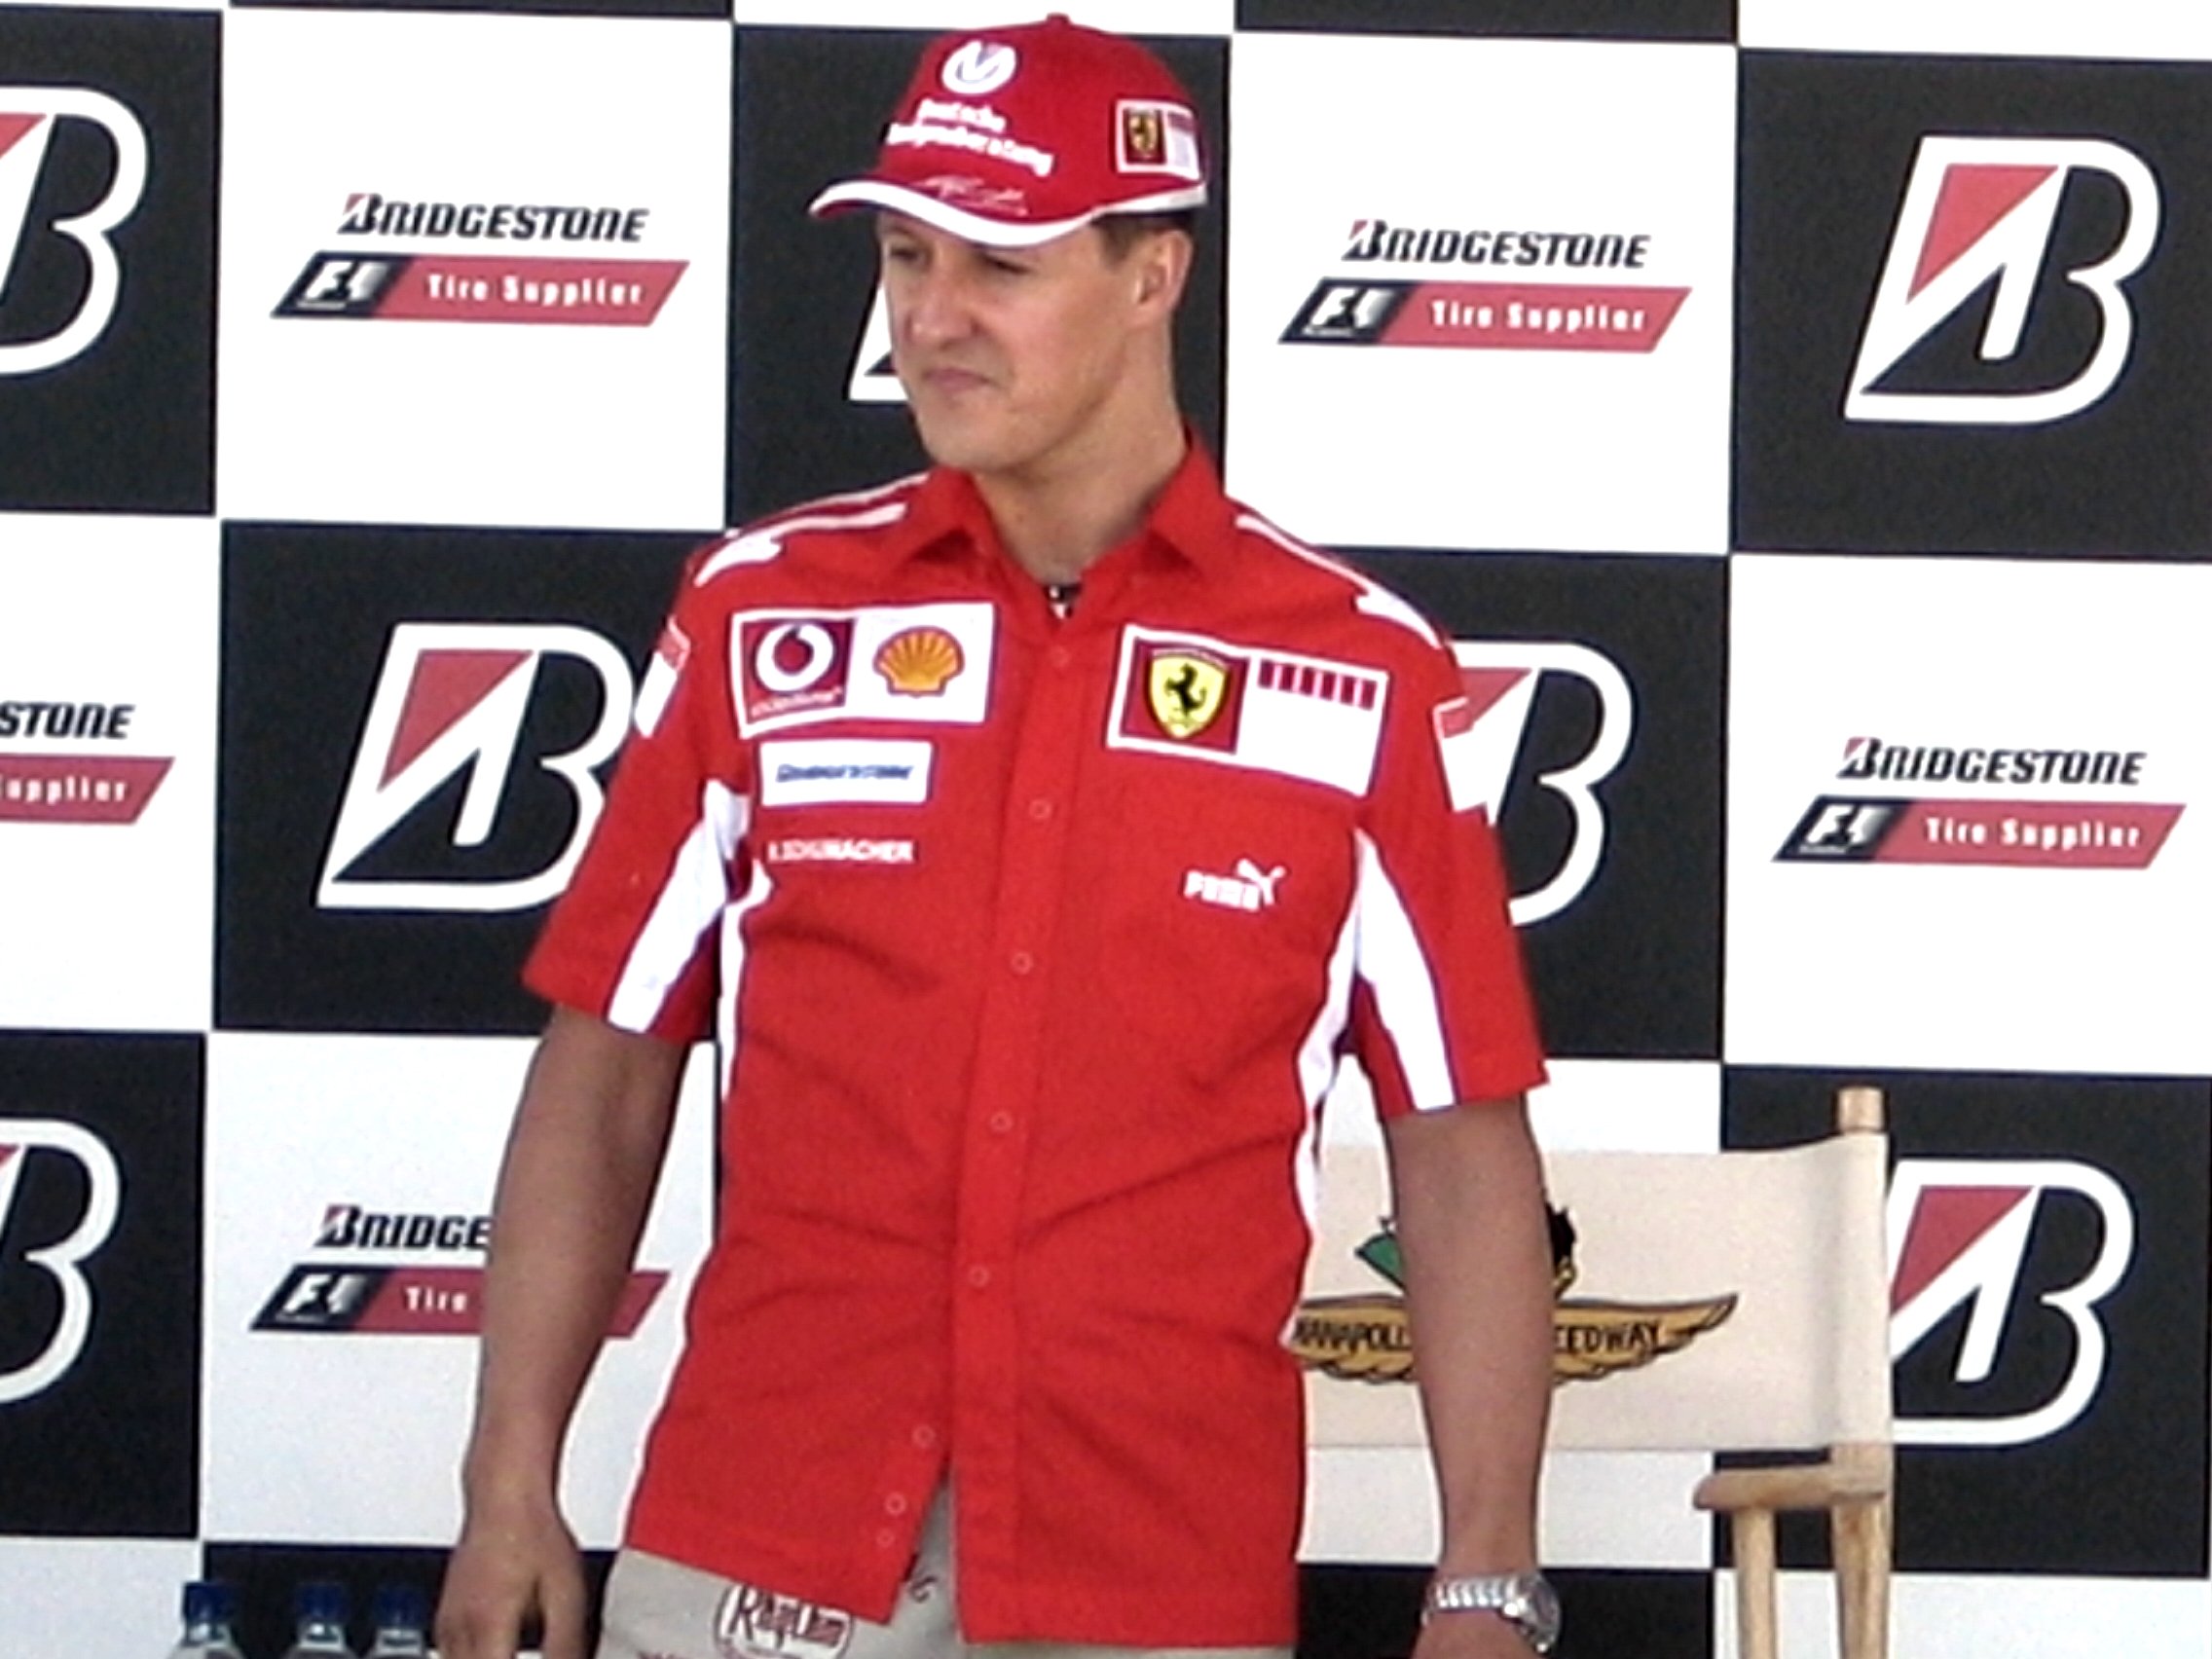 La familia de Schumacher publica una entrevista inédita de antes del accidente